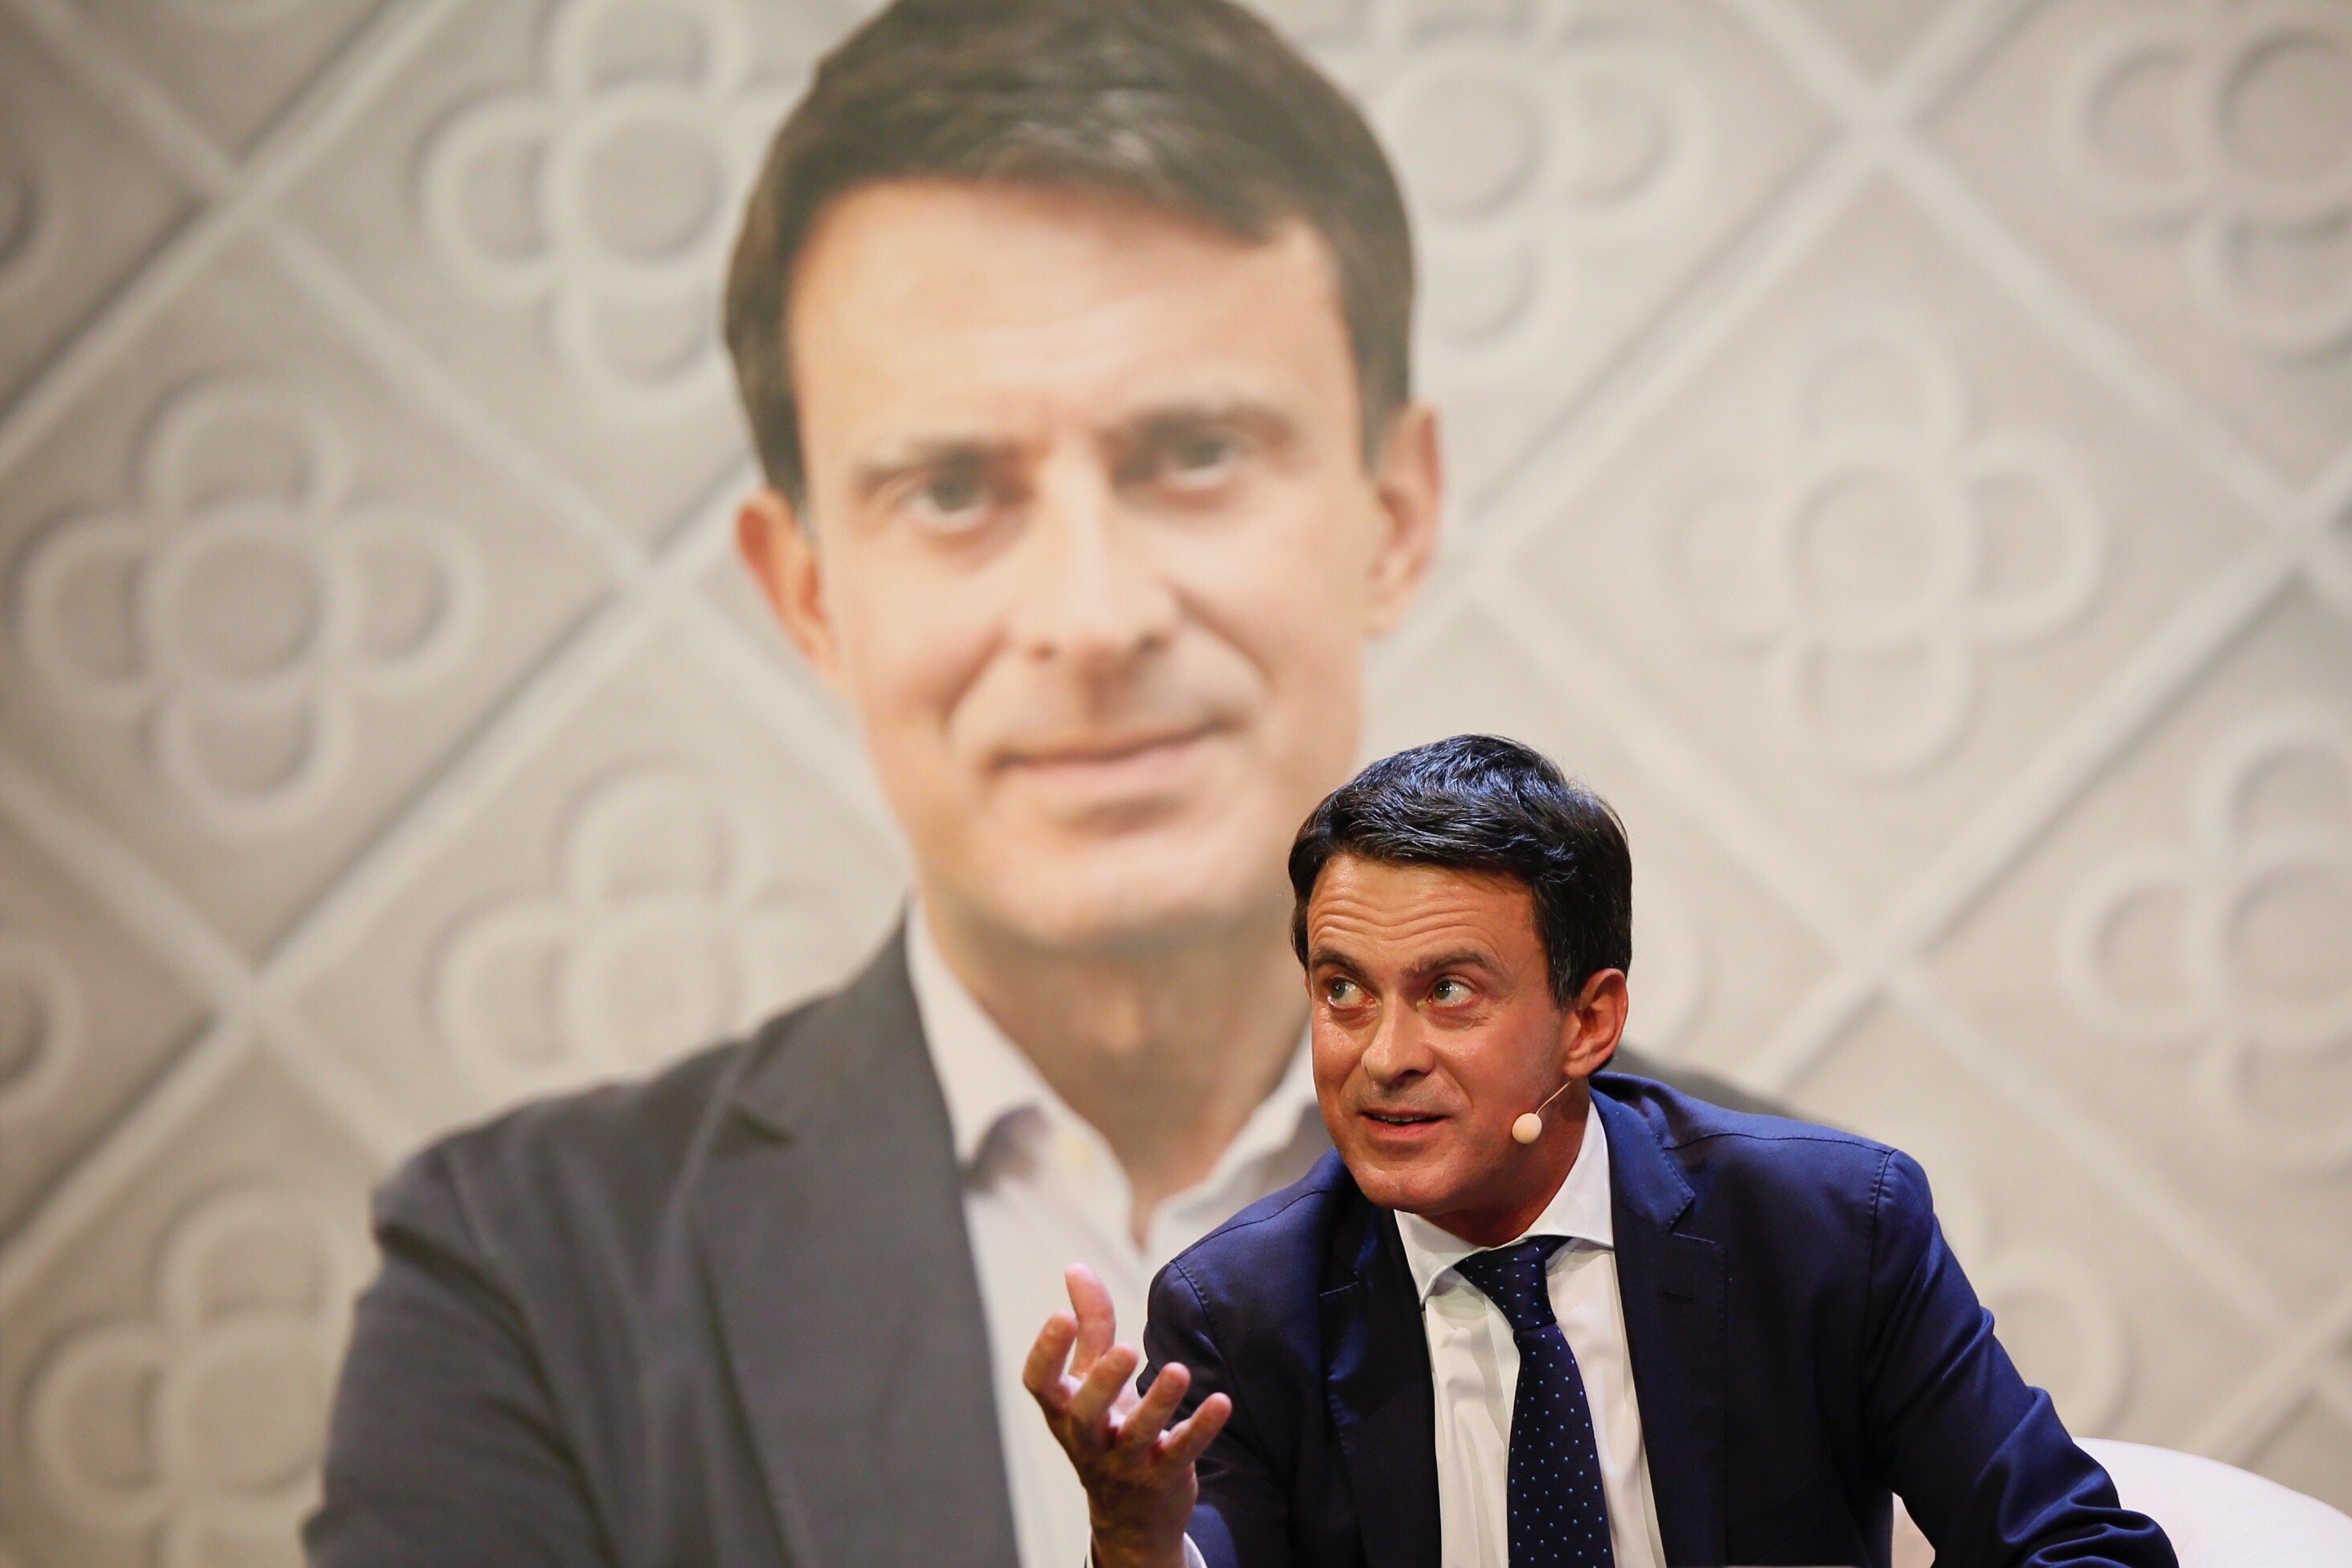 Inquietante felicitación navideña de Valls que provoca carcajadas: "Qué mal rollo, ridículo"